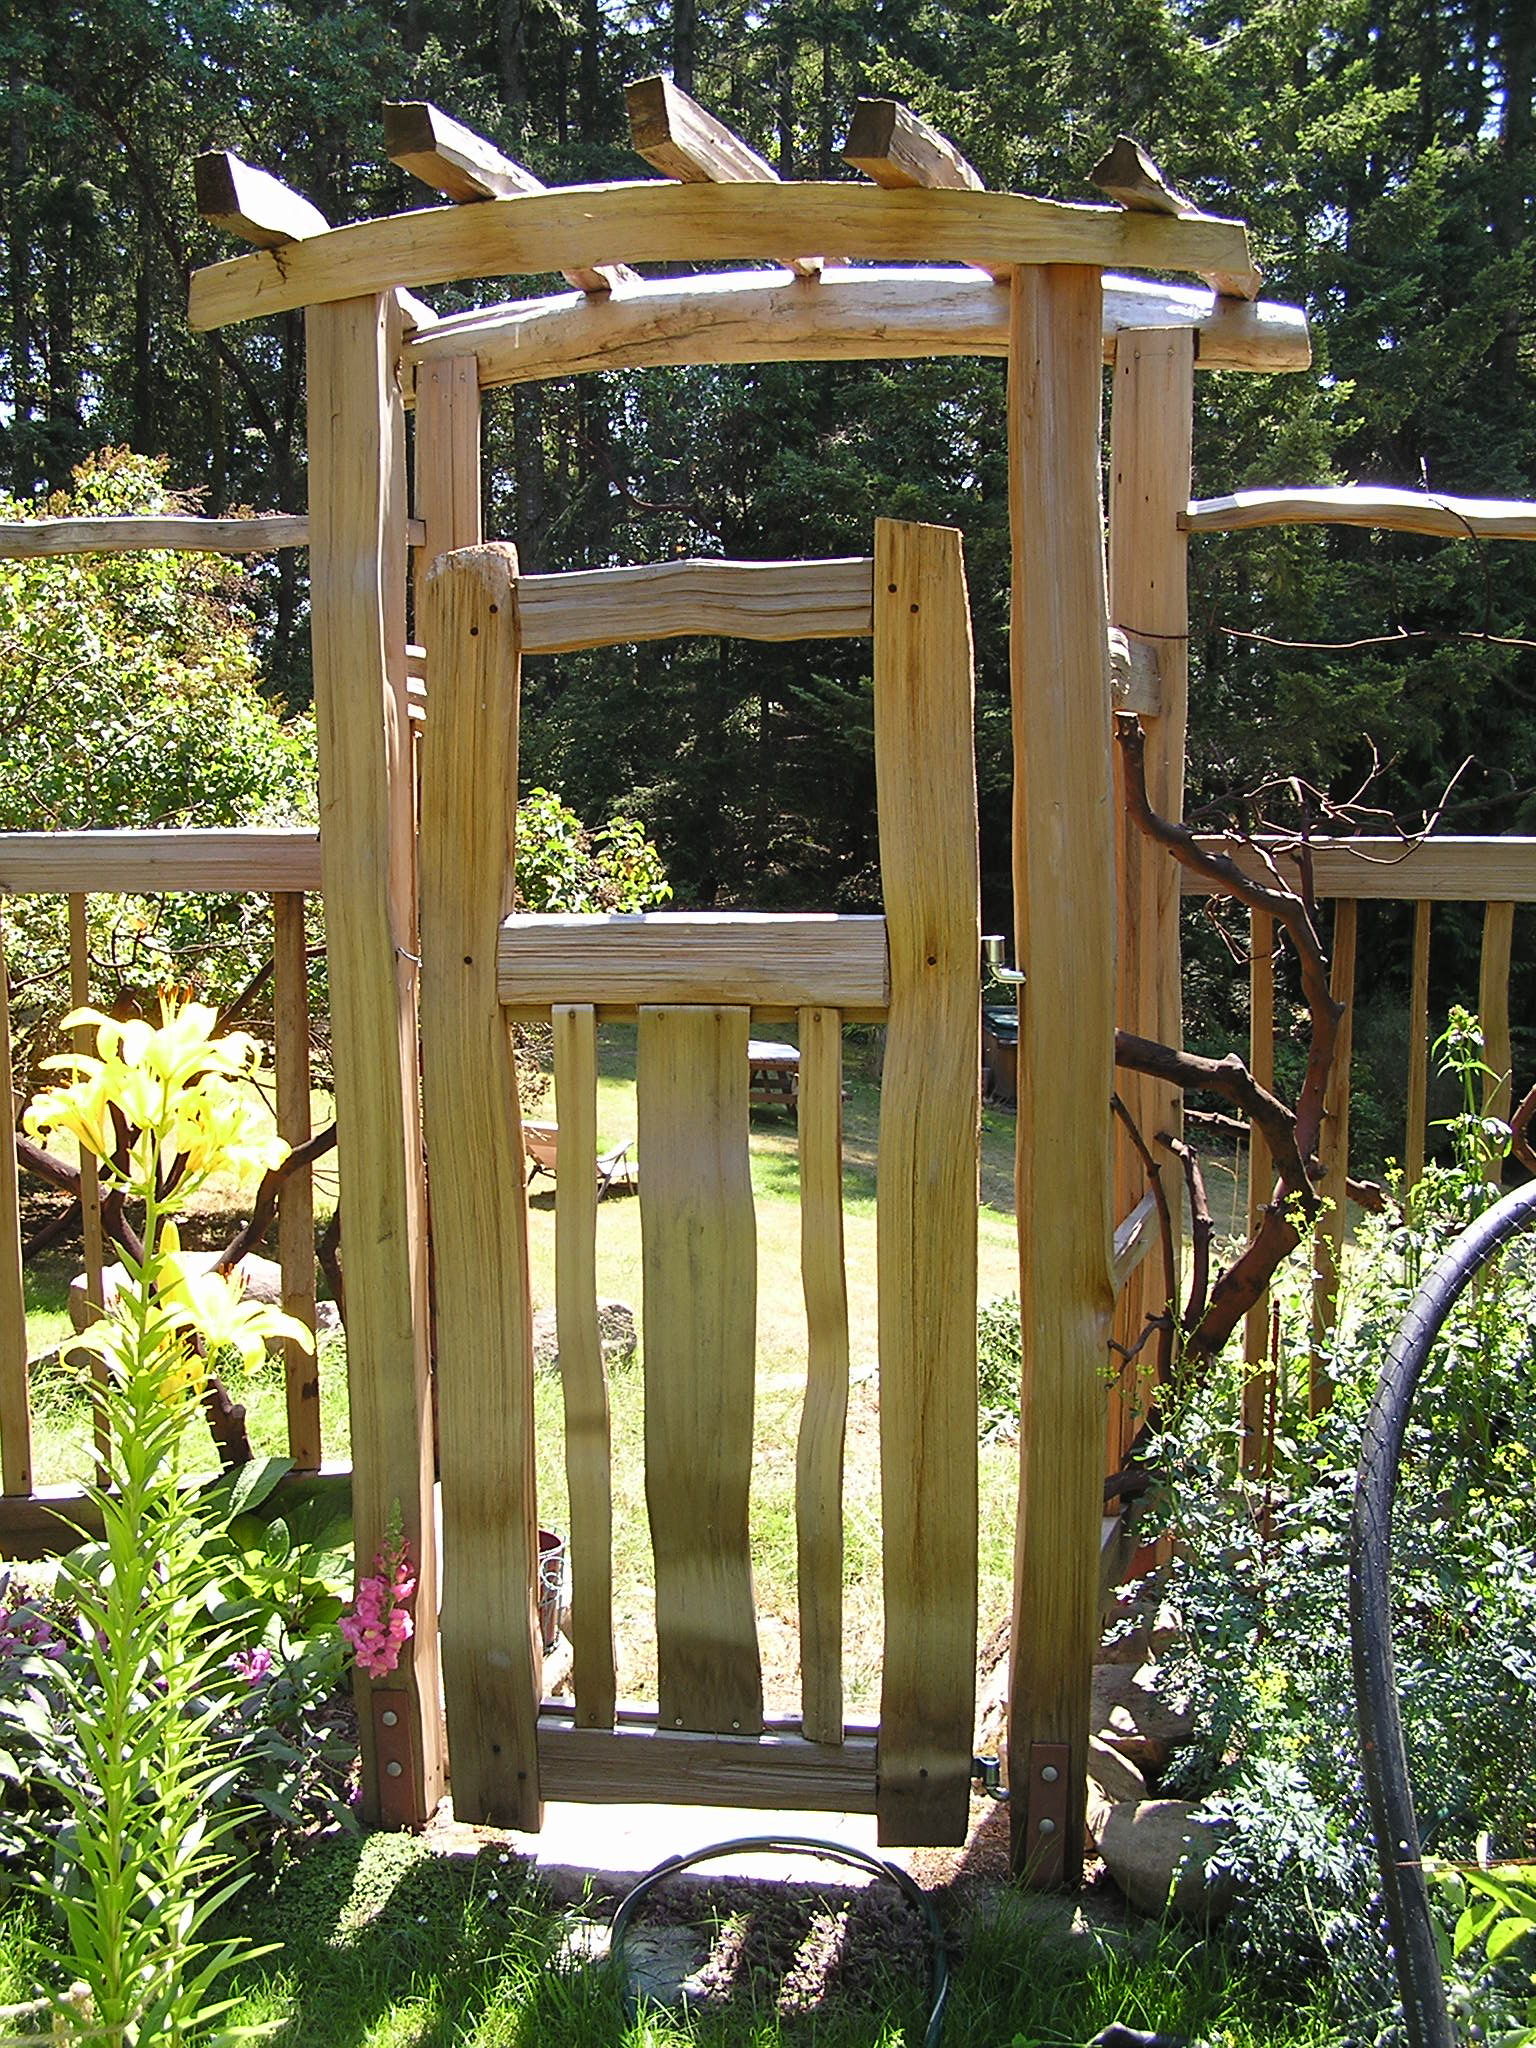  garden arbor leads into the garden, through a hand split cedar gate